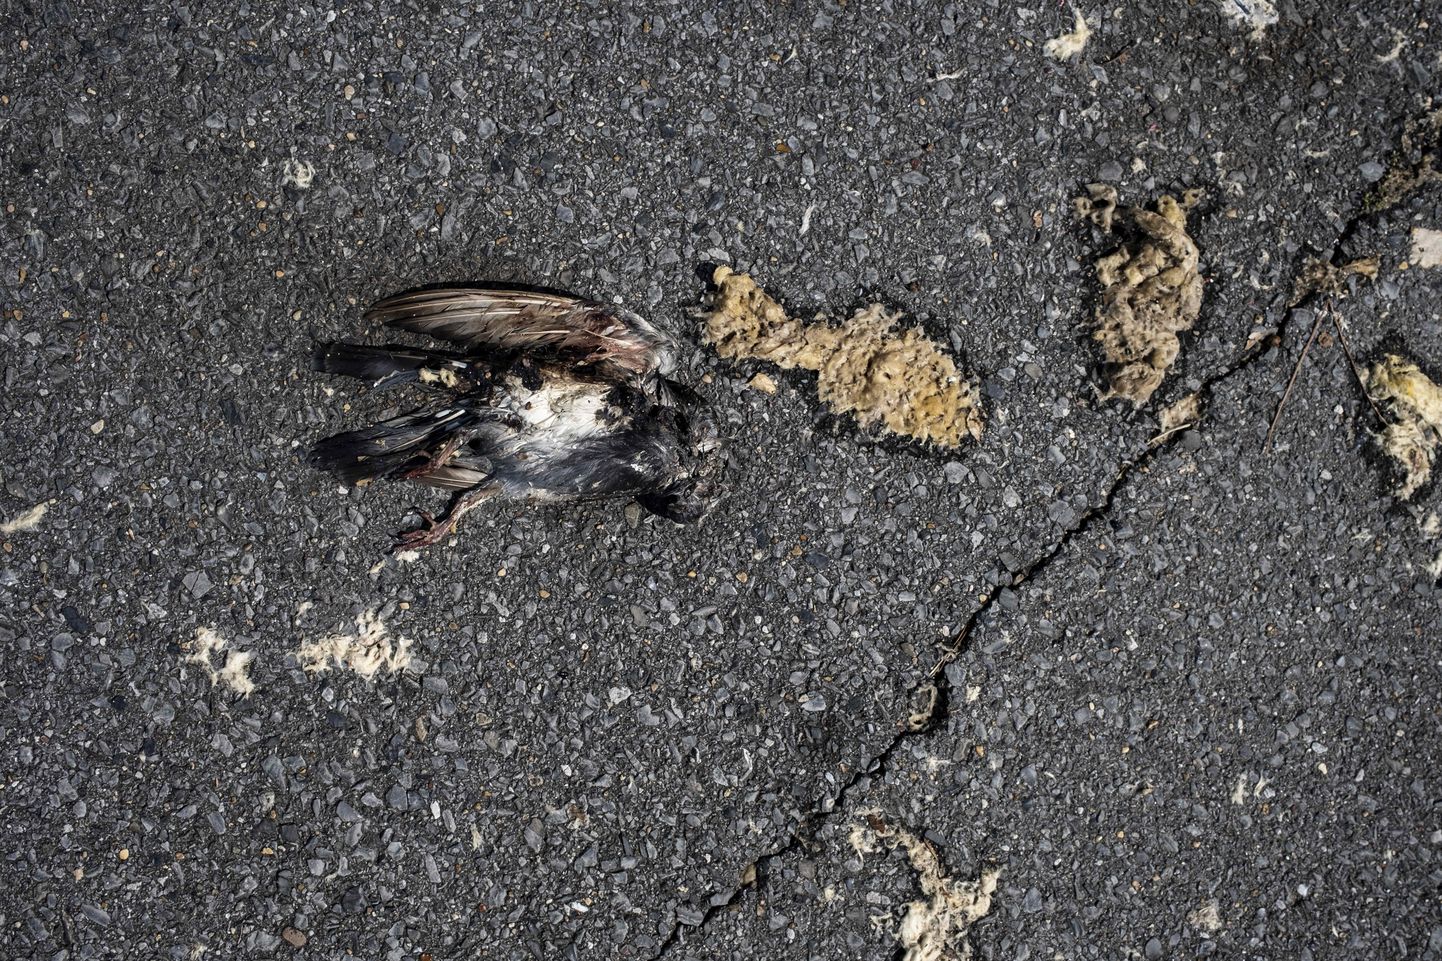 Surnud lind